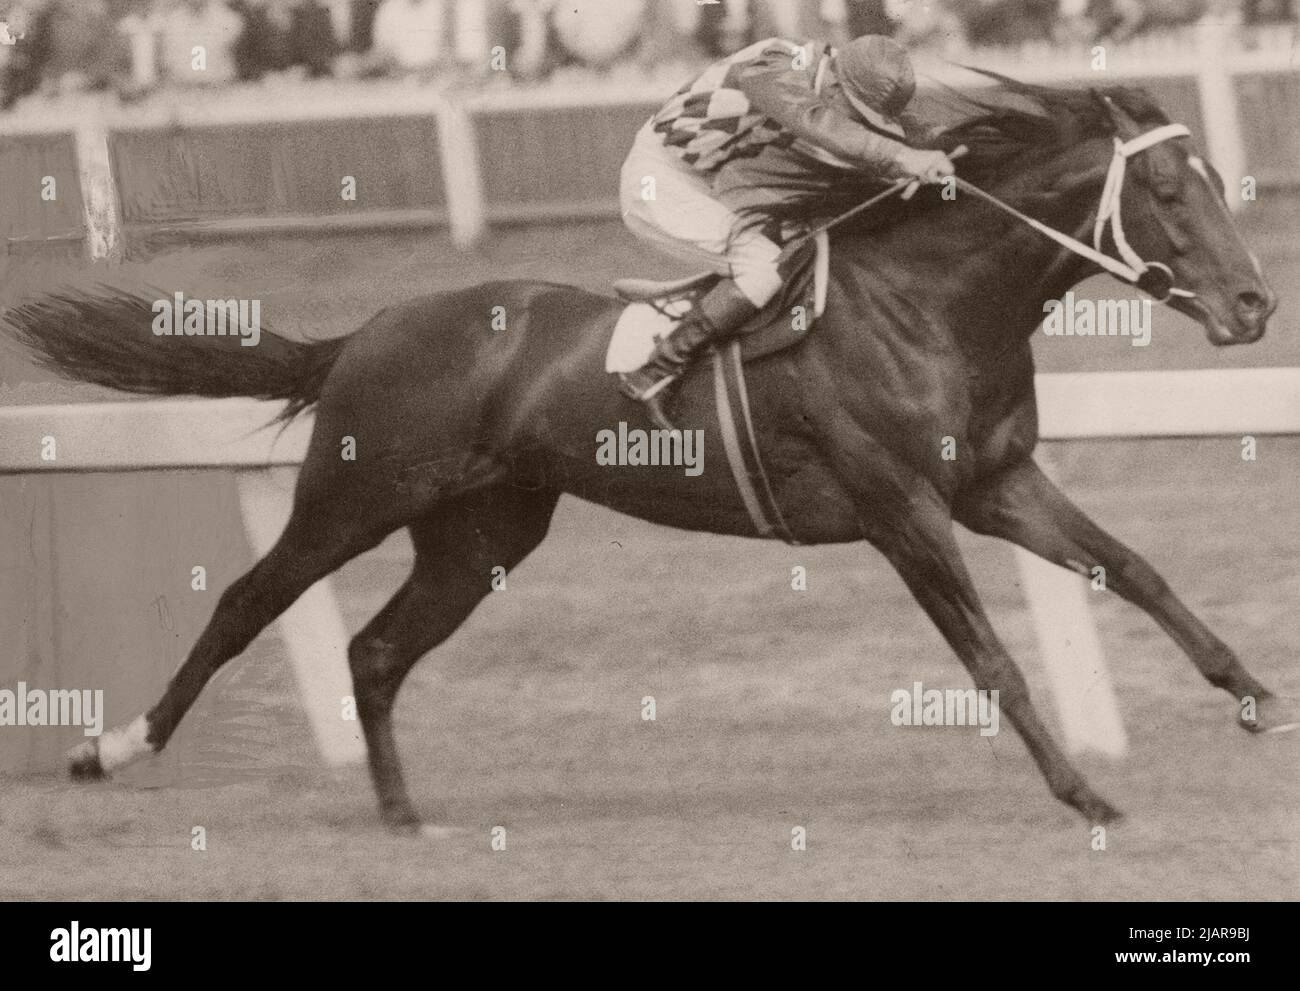 Comic court (1945-1973) était un cheval de course polyvalent de race australienne de race Thoroughbred qui a établi des records de course à des distances de 6 furlongs (1 200 mètres) et 2 miles (3 200 mètres). CA. 1949 Banque D'Images